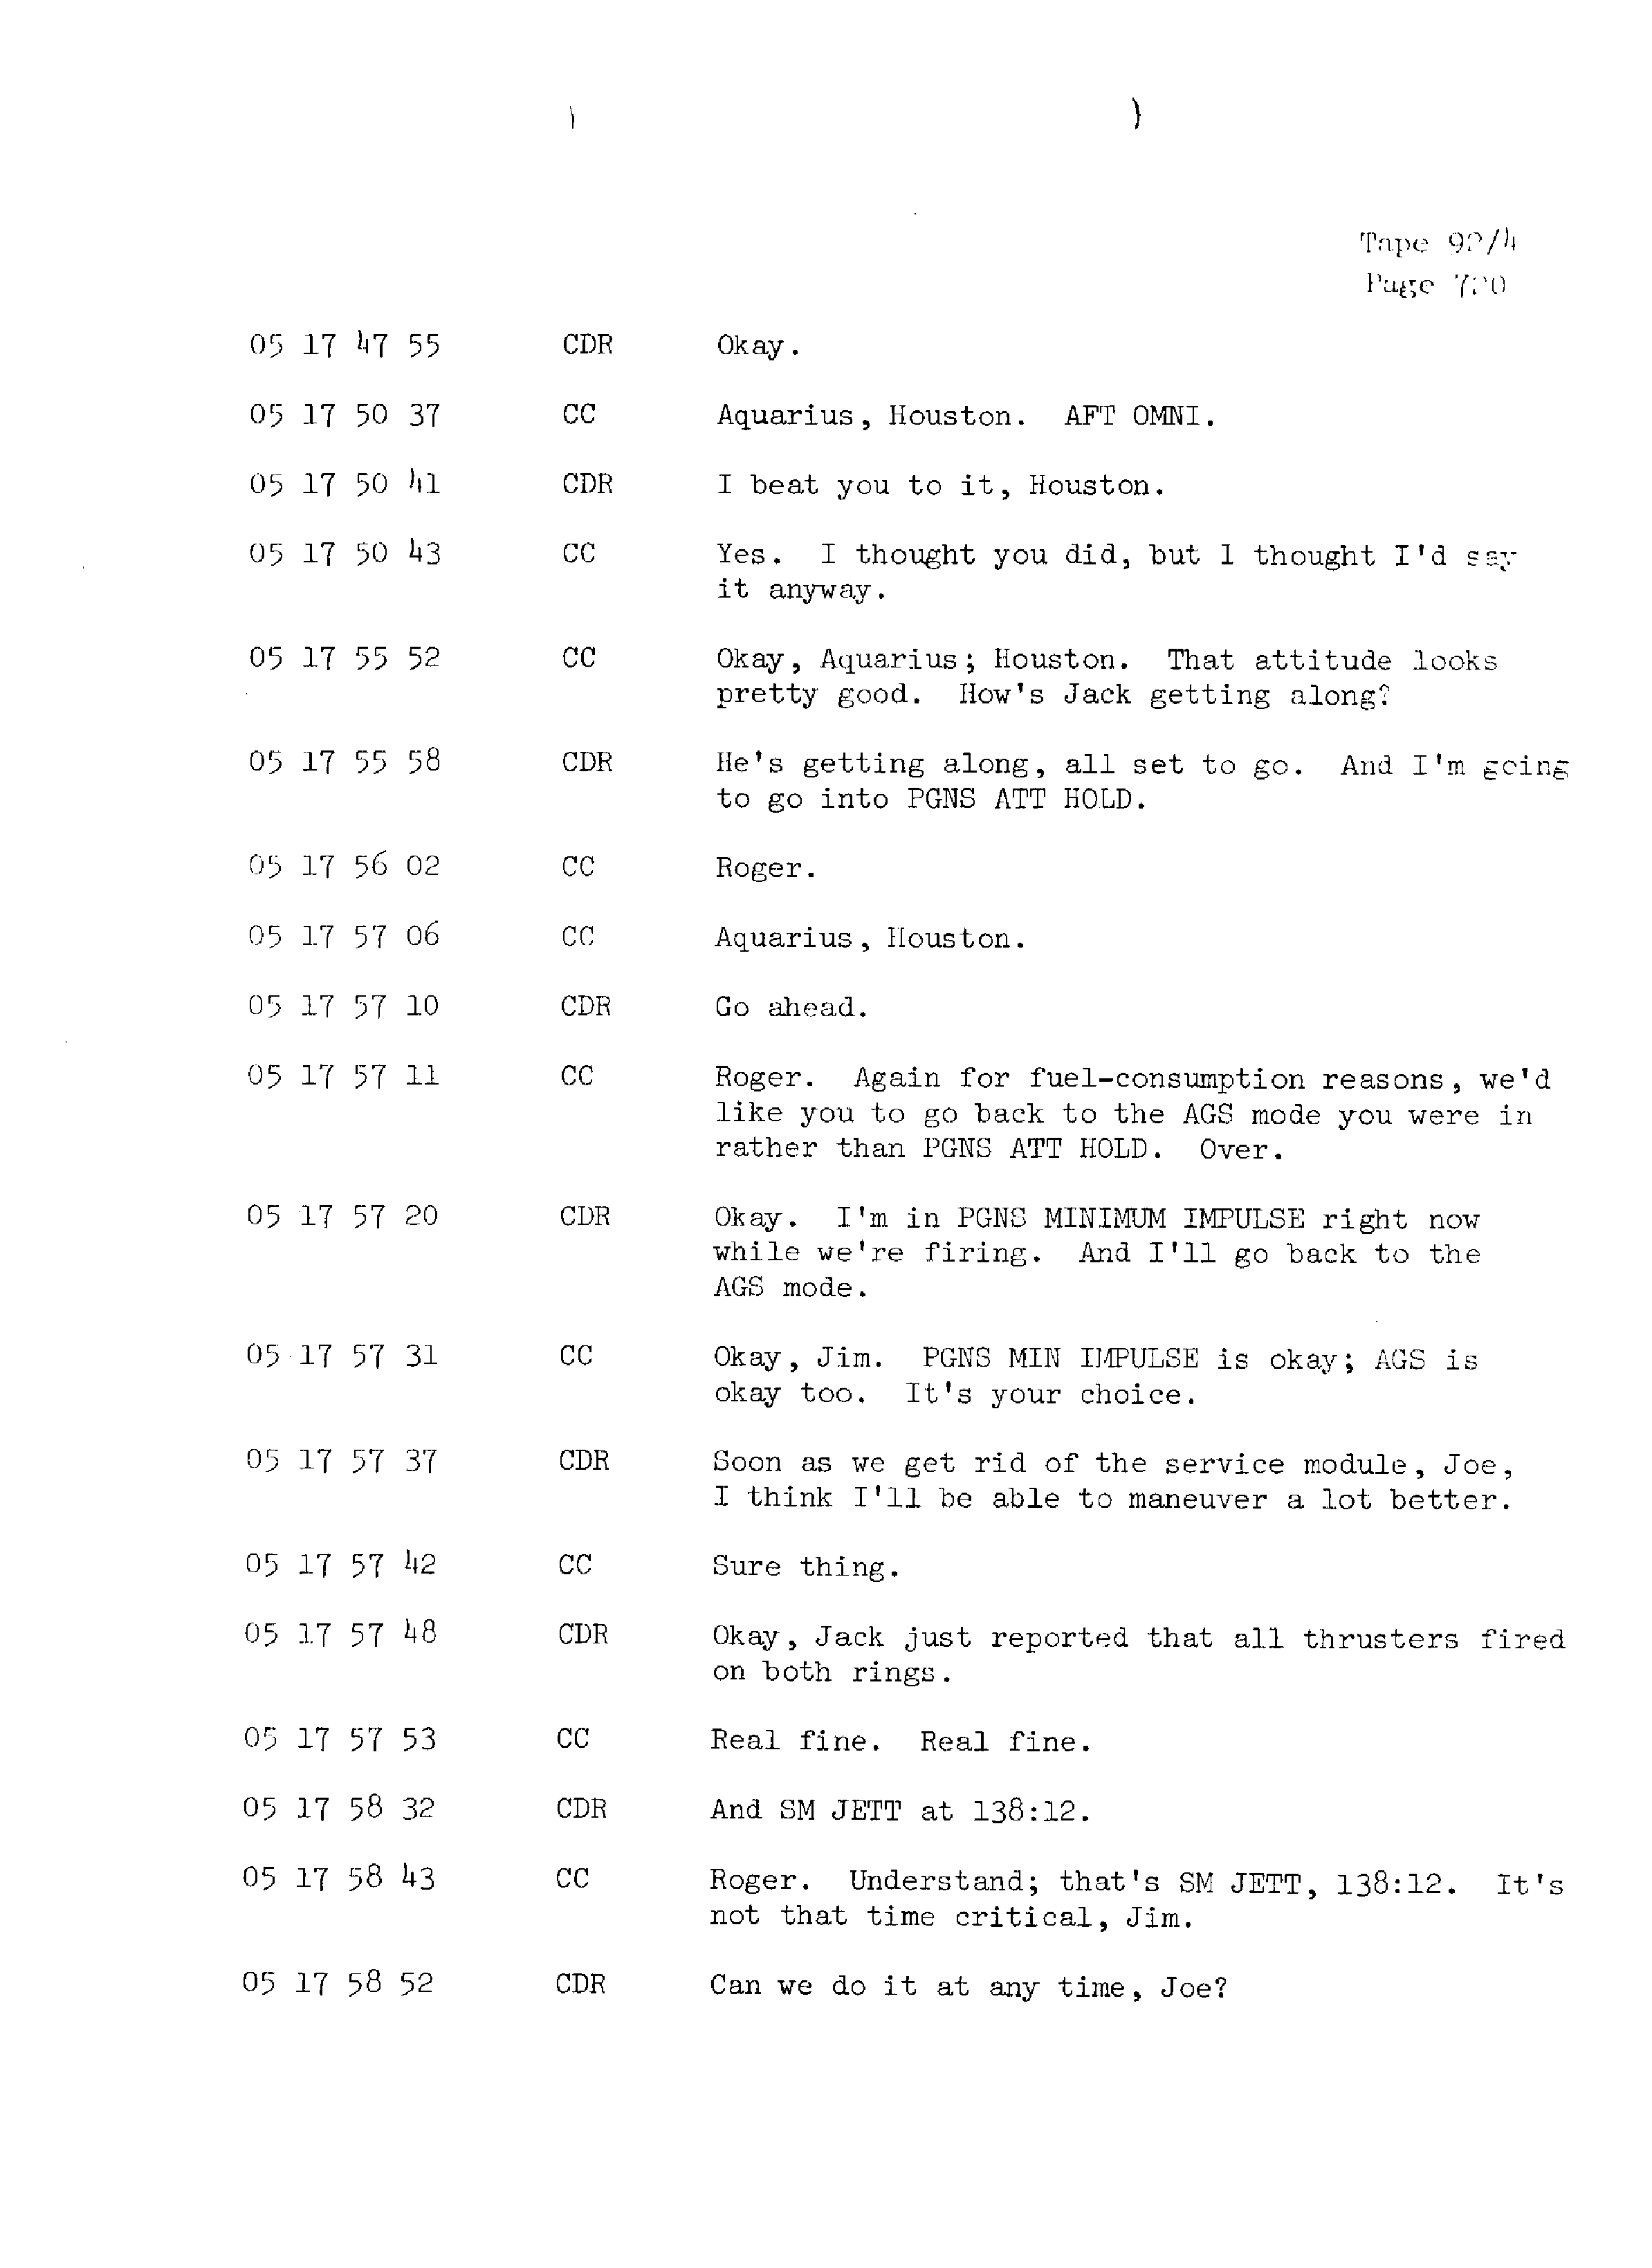 Page 727 of Apollo 13’s original transcript